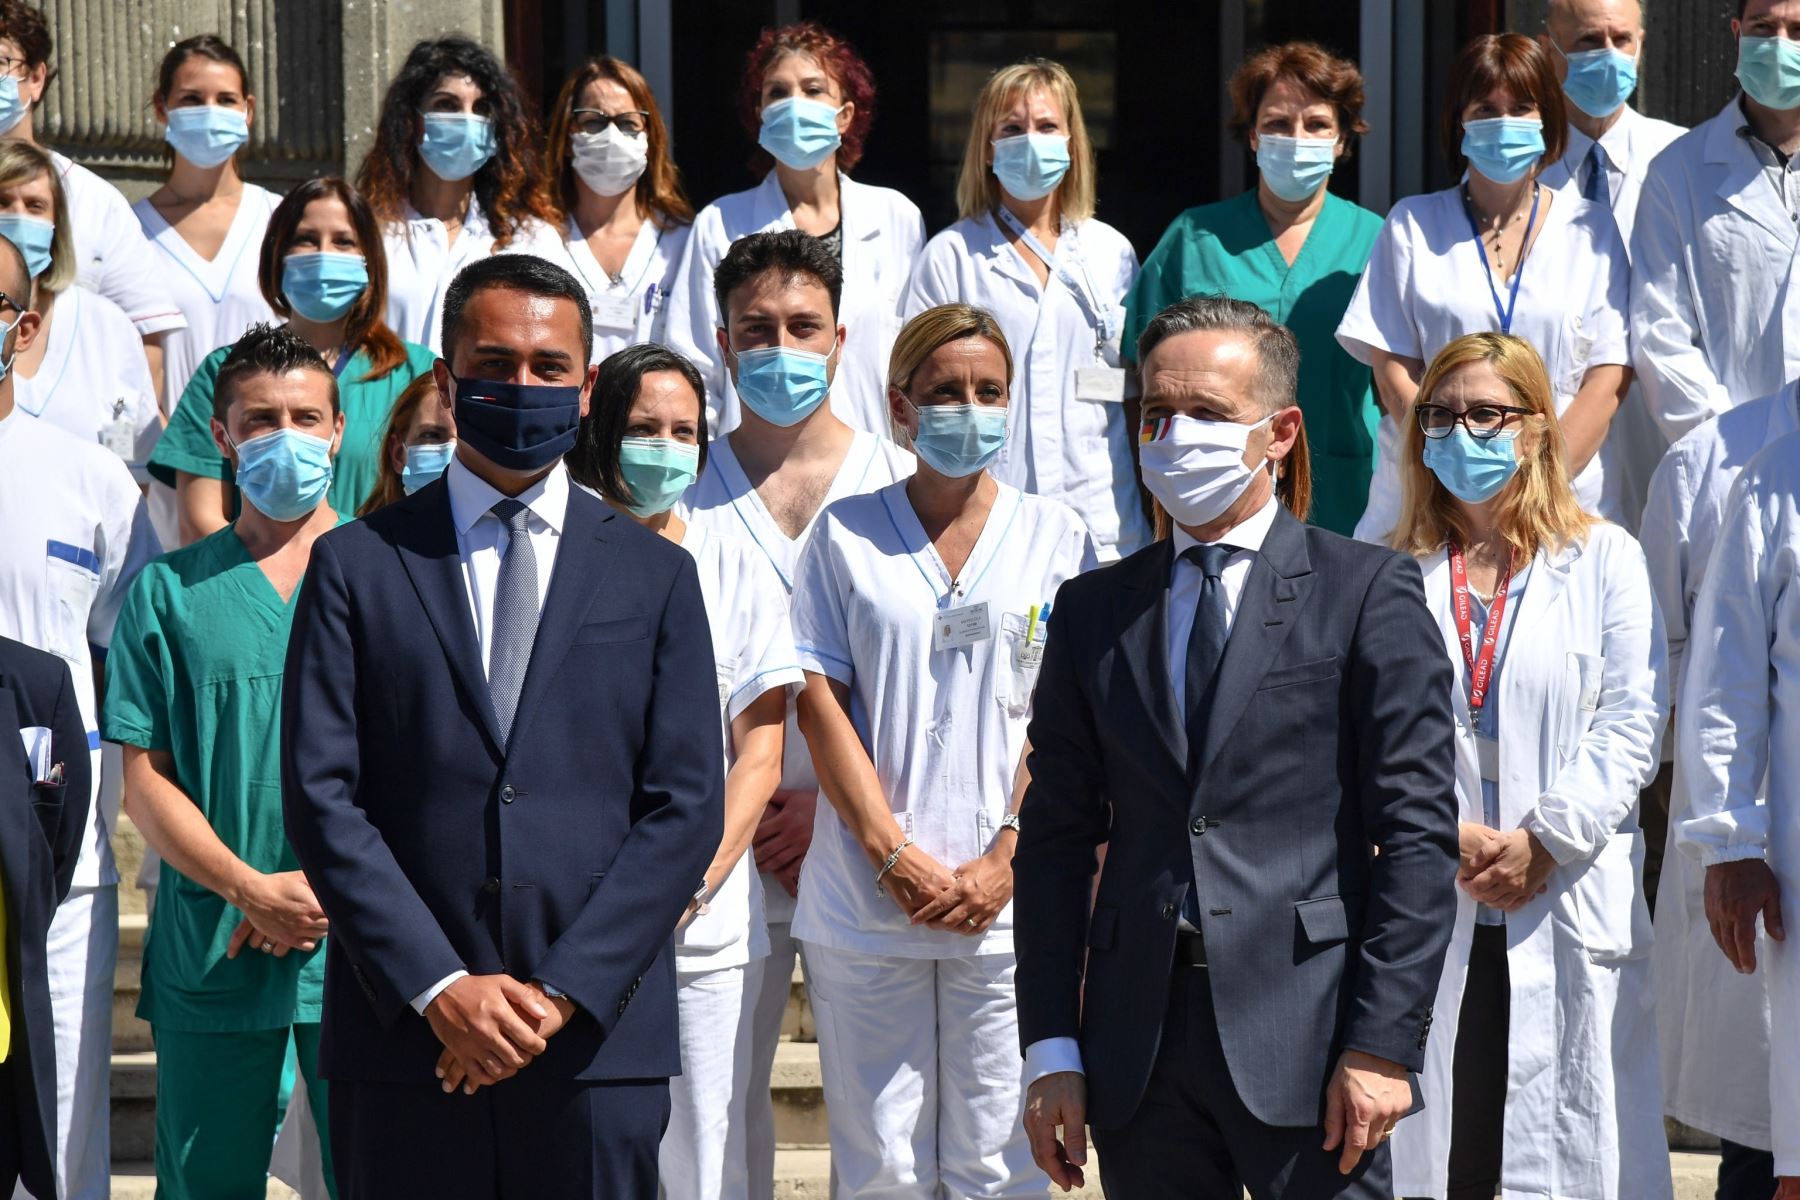 El Ministro de Asuntos Exteriores italiano, Luigi Di Maio (L) y el Ministro de Asuntos Exteriores alemán, Heiko Maas (R), se encuentran con personal sanitario durante una visita en el Hospital Lazzaro Spallanzani en Roma, Italia. Foto: EFE